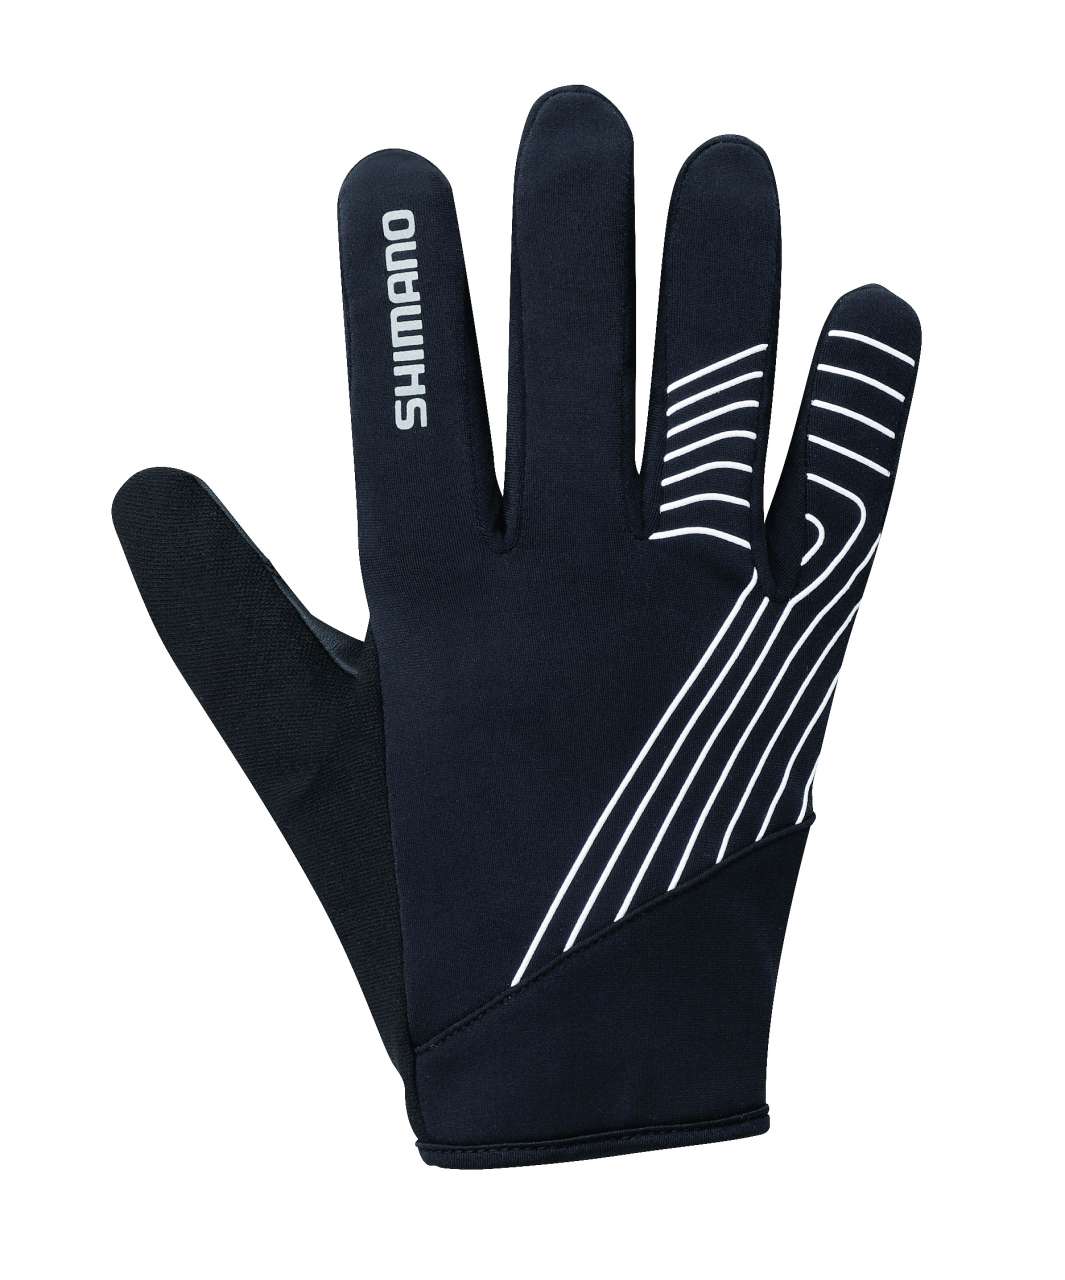 Shimano Light Winter Handschoenen Zwart